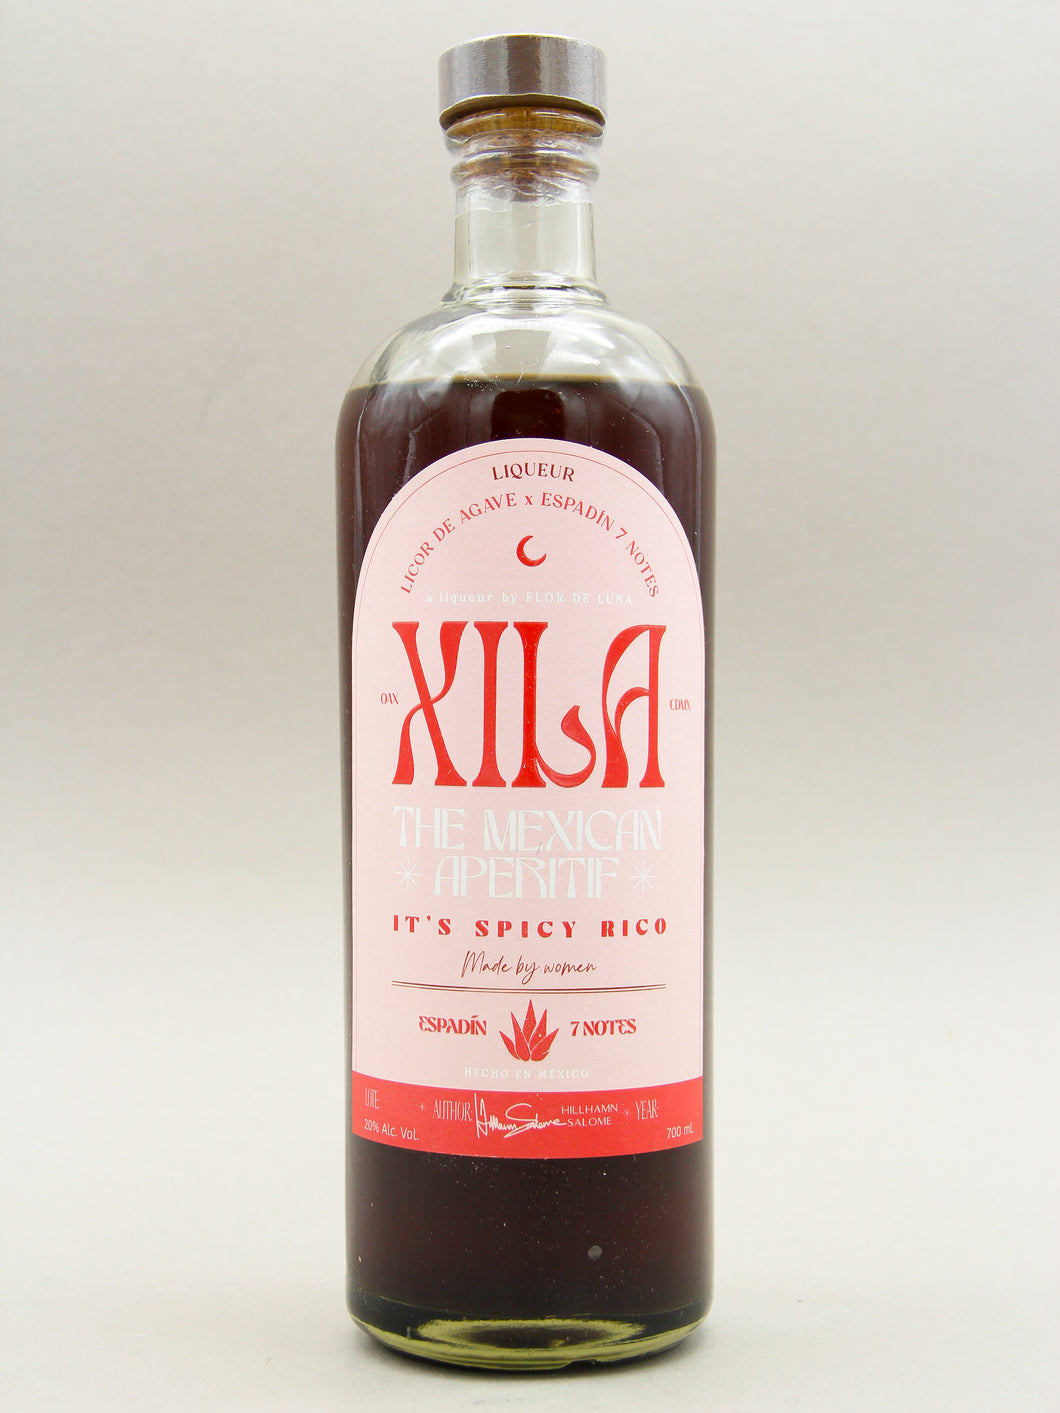 Xila, Licor de Agave, Mexican Aperitif (20%, 70cl)